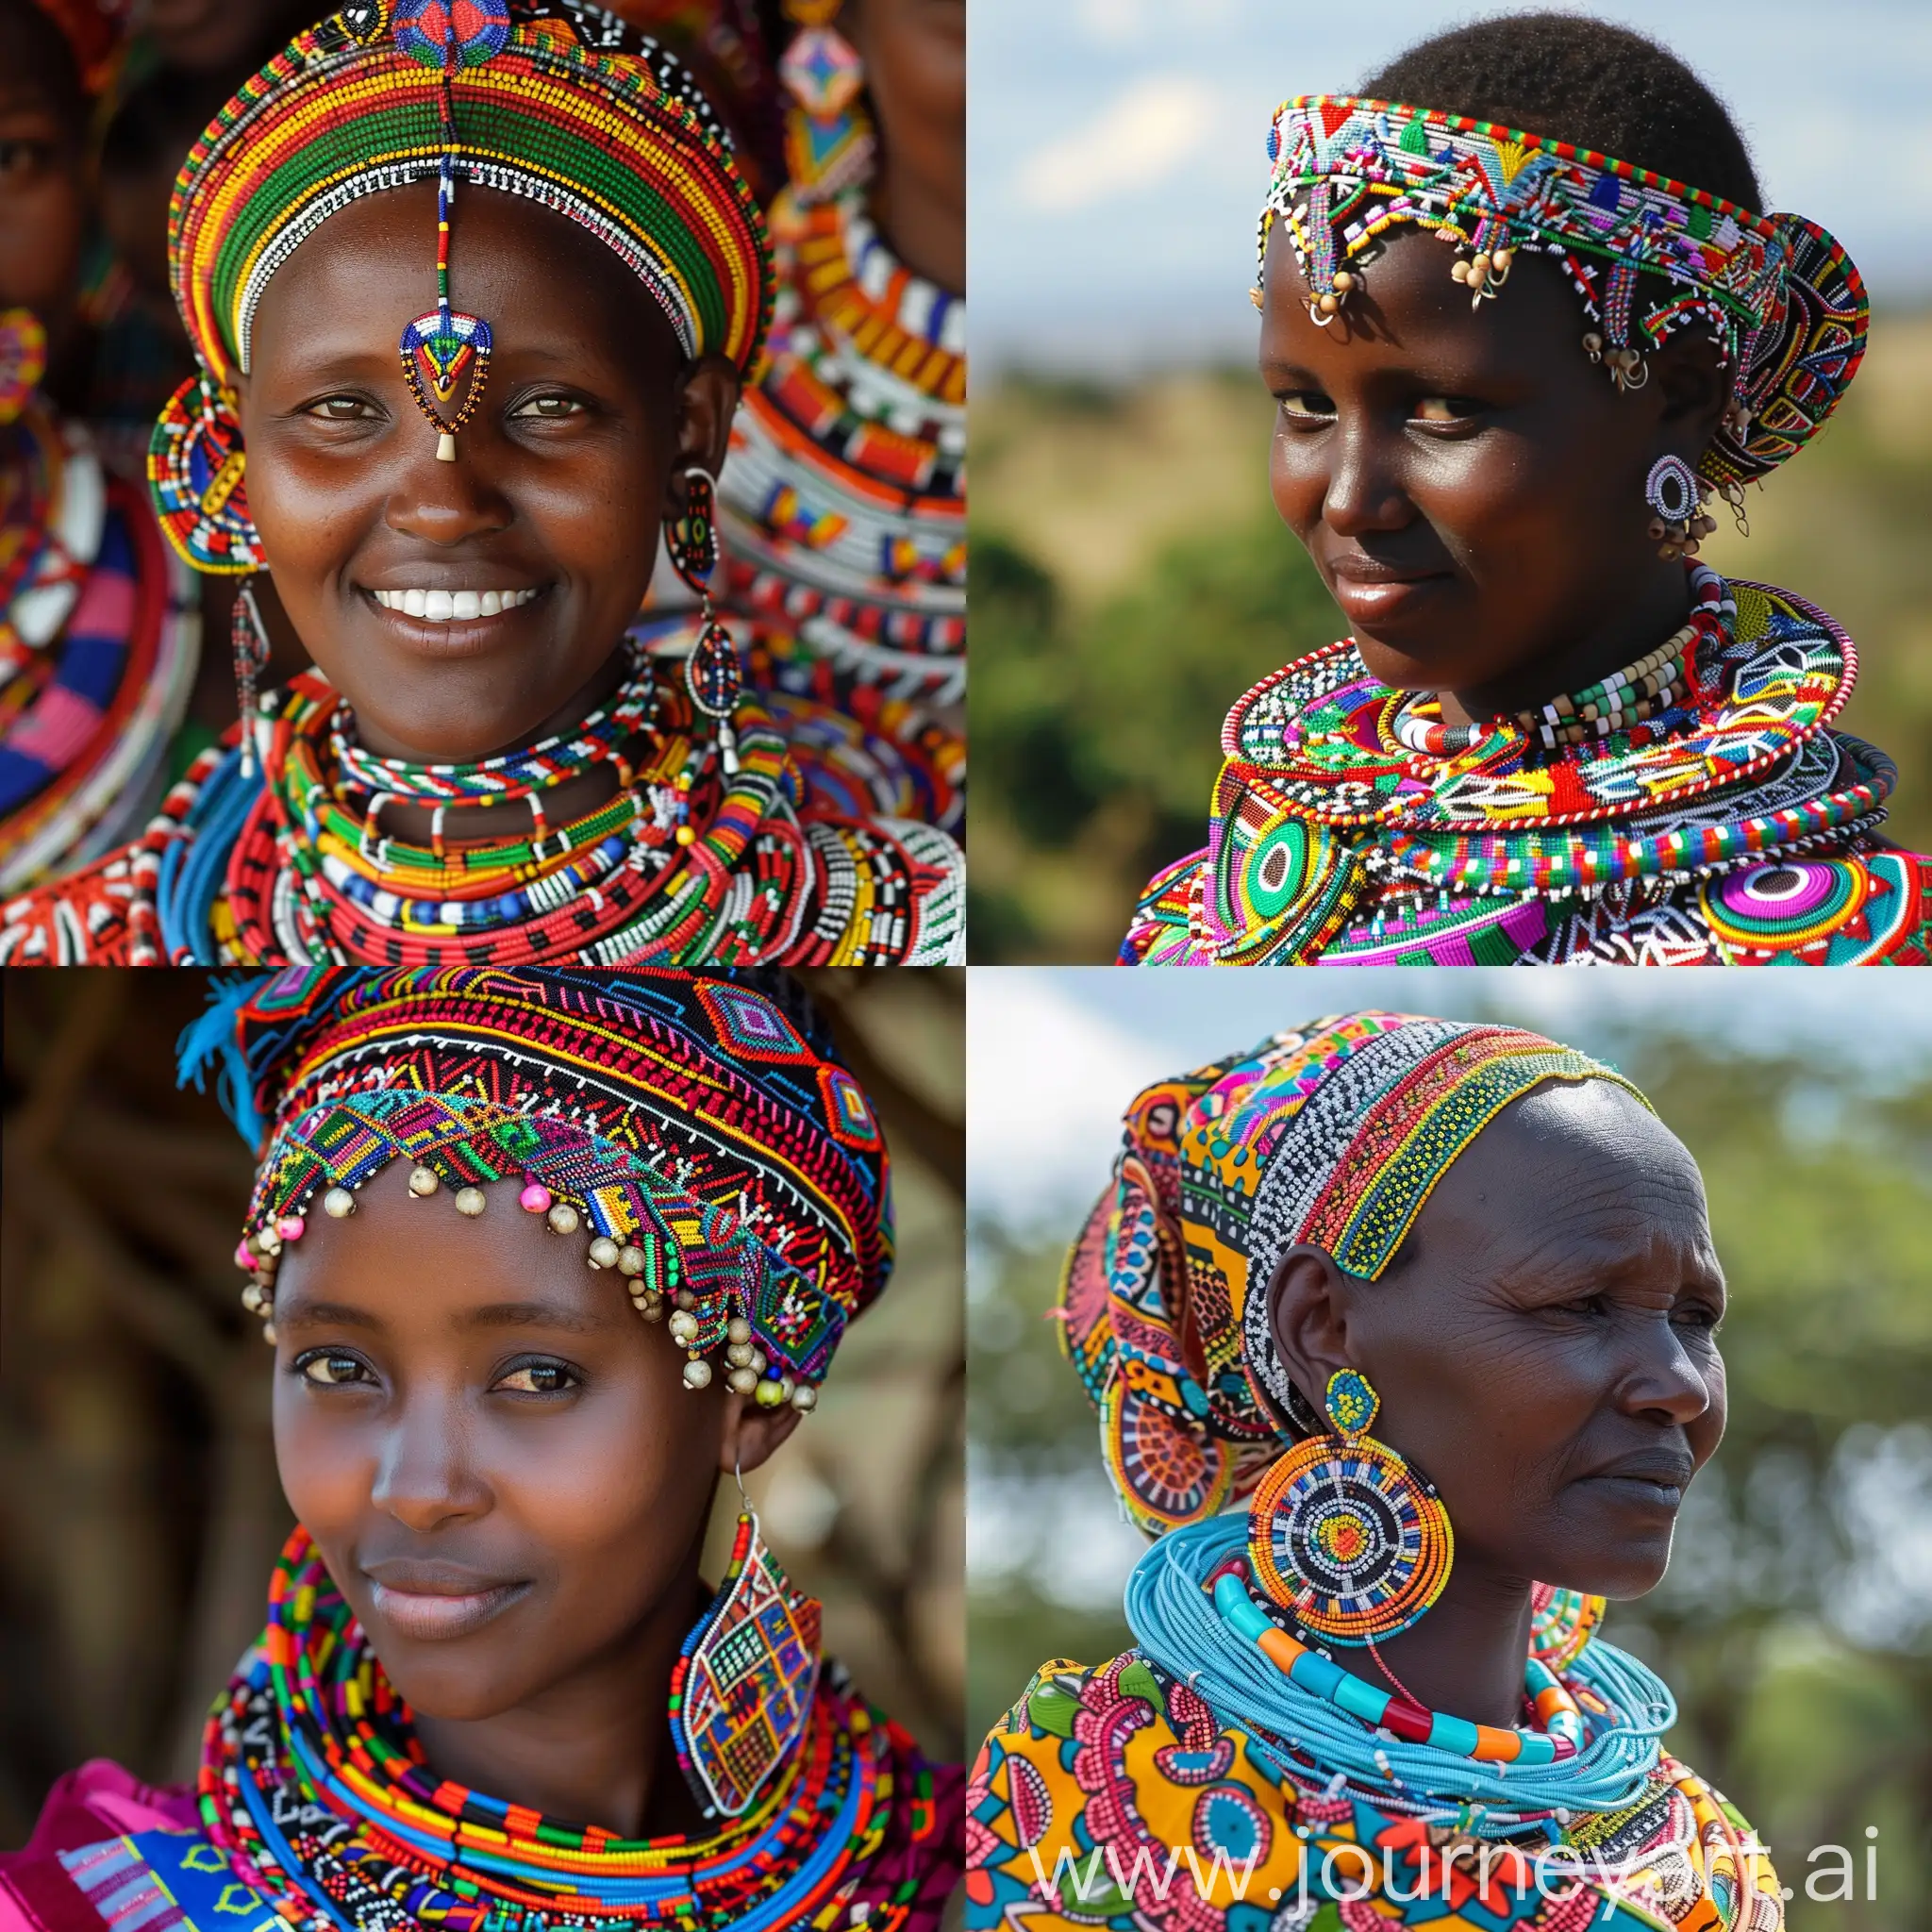 Beautiful women in Kenya

